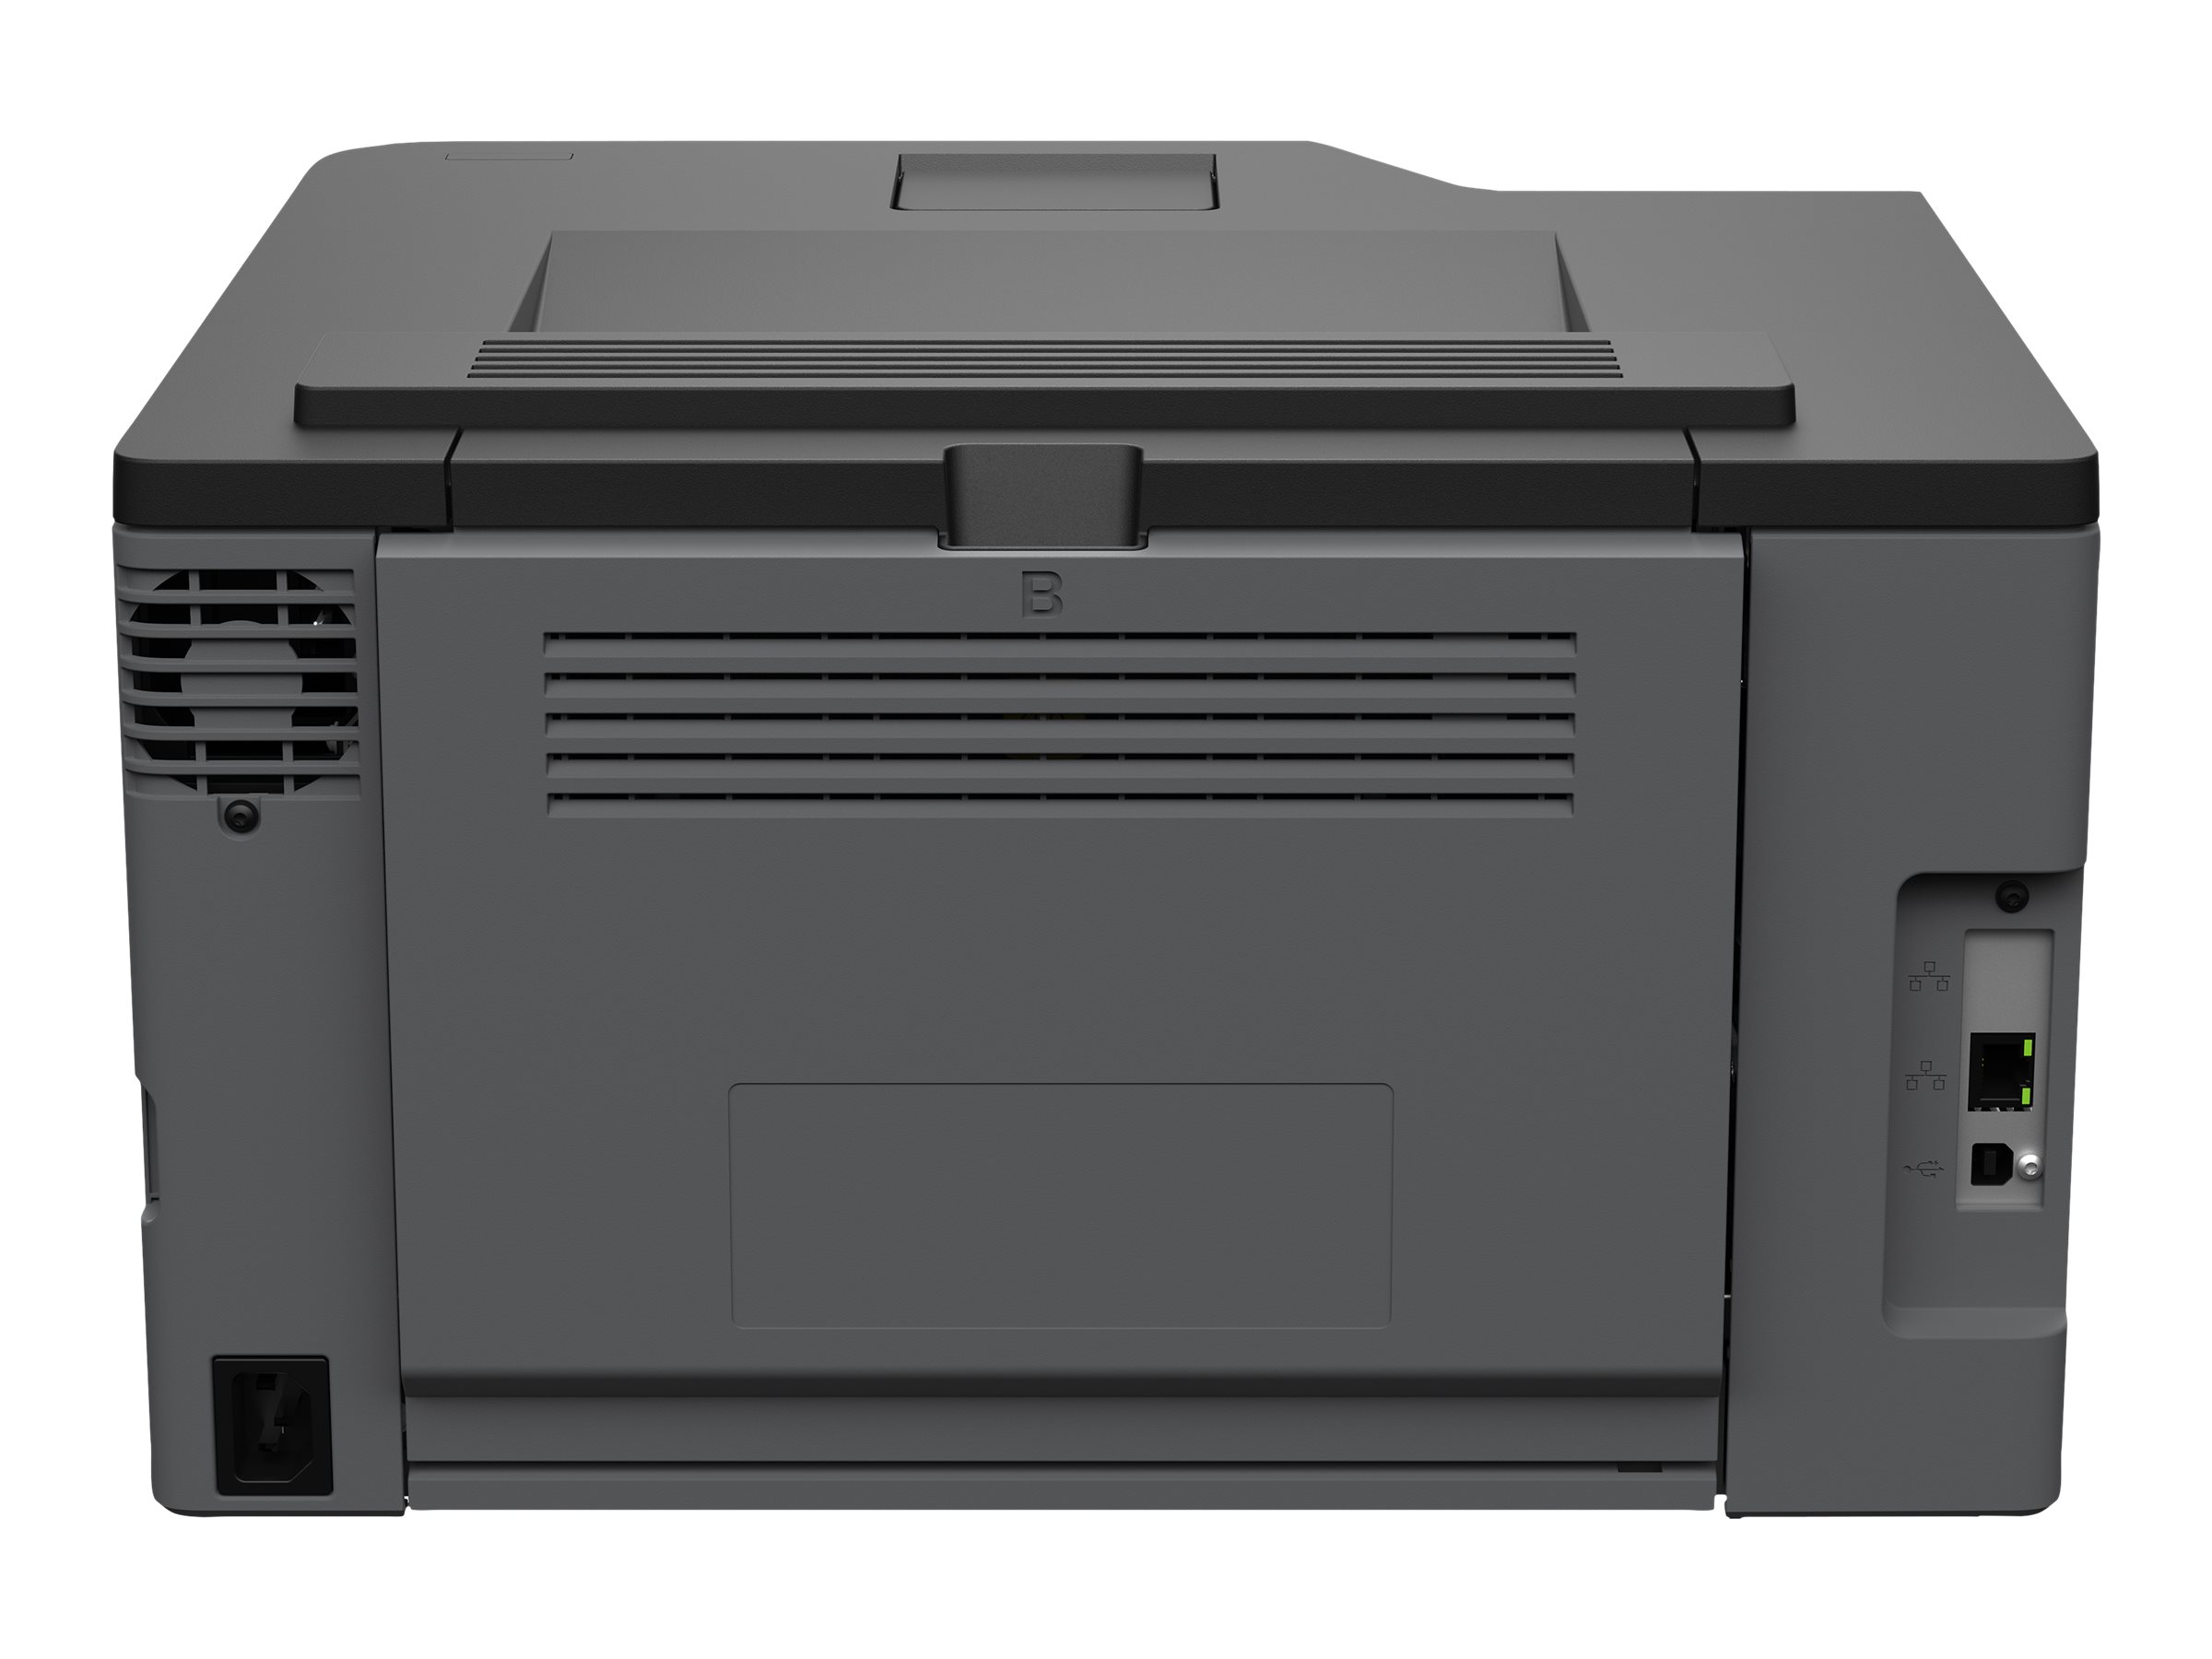 Lexmark C3326dw - Drucker - Farbe - Duplex - Laser - A4/Legal - 600 x 600 dpi - bis zu 24 Seiten/Min. (einfarbig)/